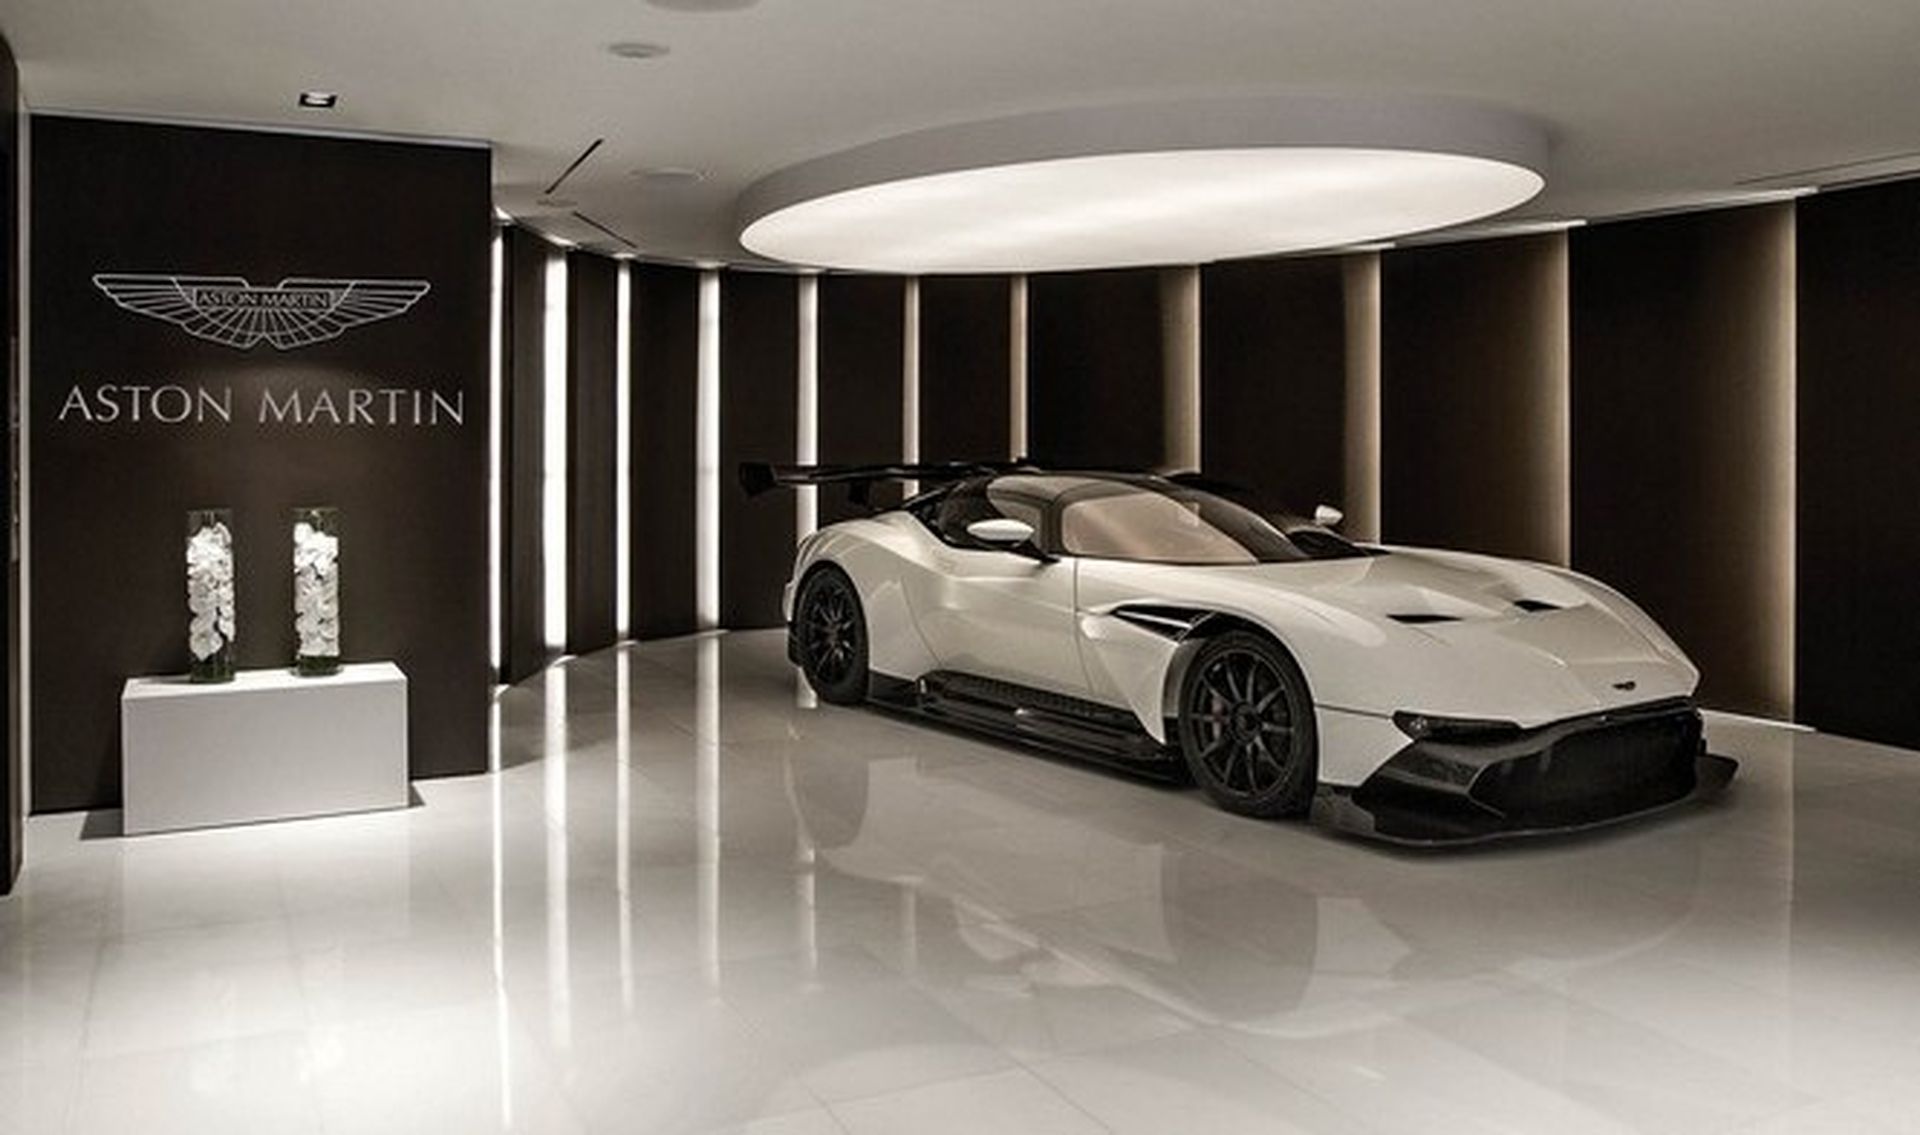 El edificio de Aston Martin en Miami